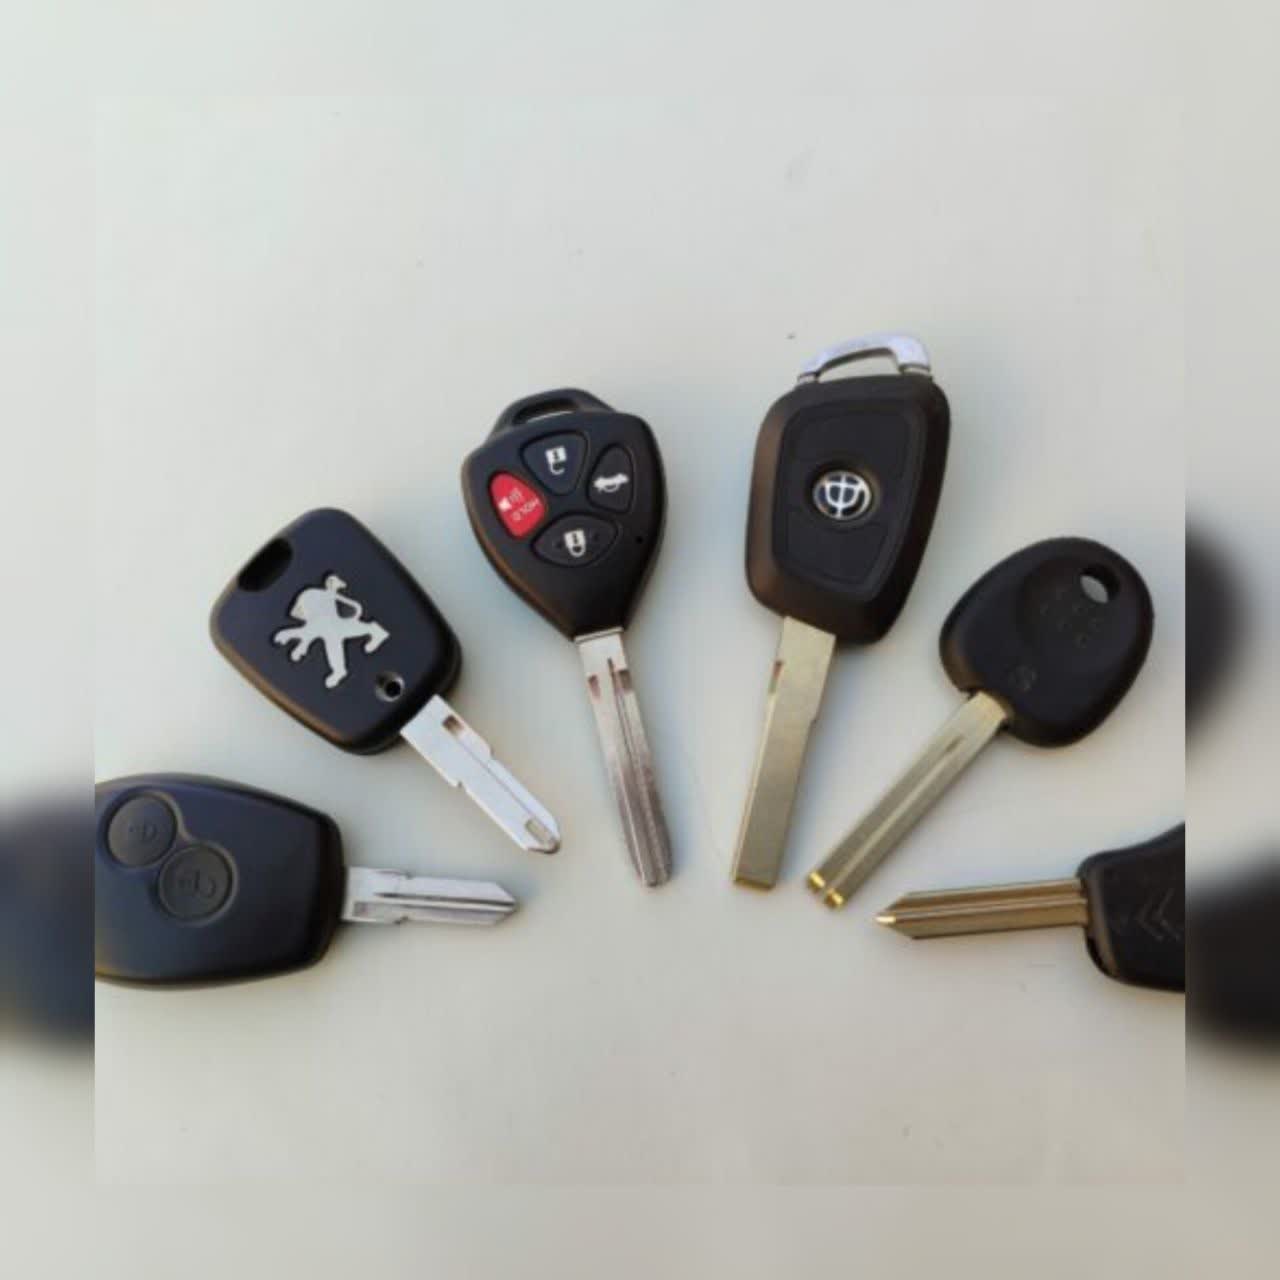 ریموت و کلید خودرو کلیدیار-pic1